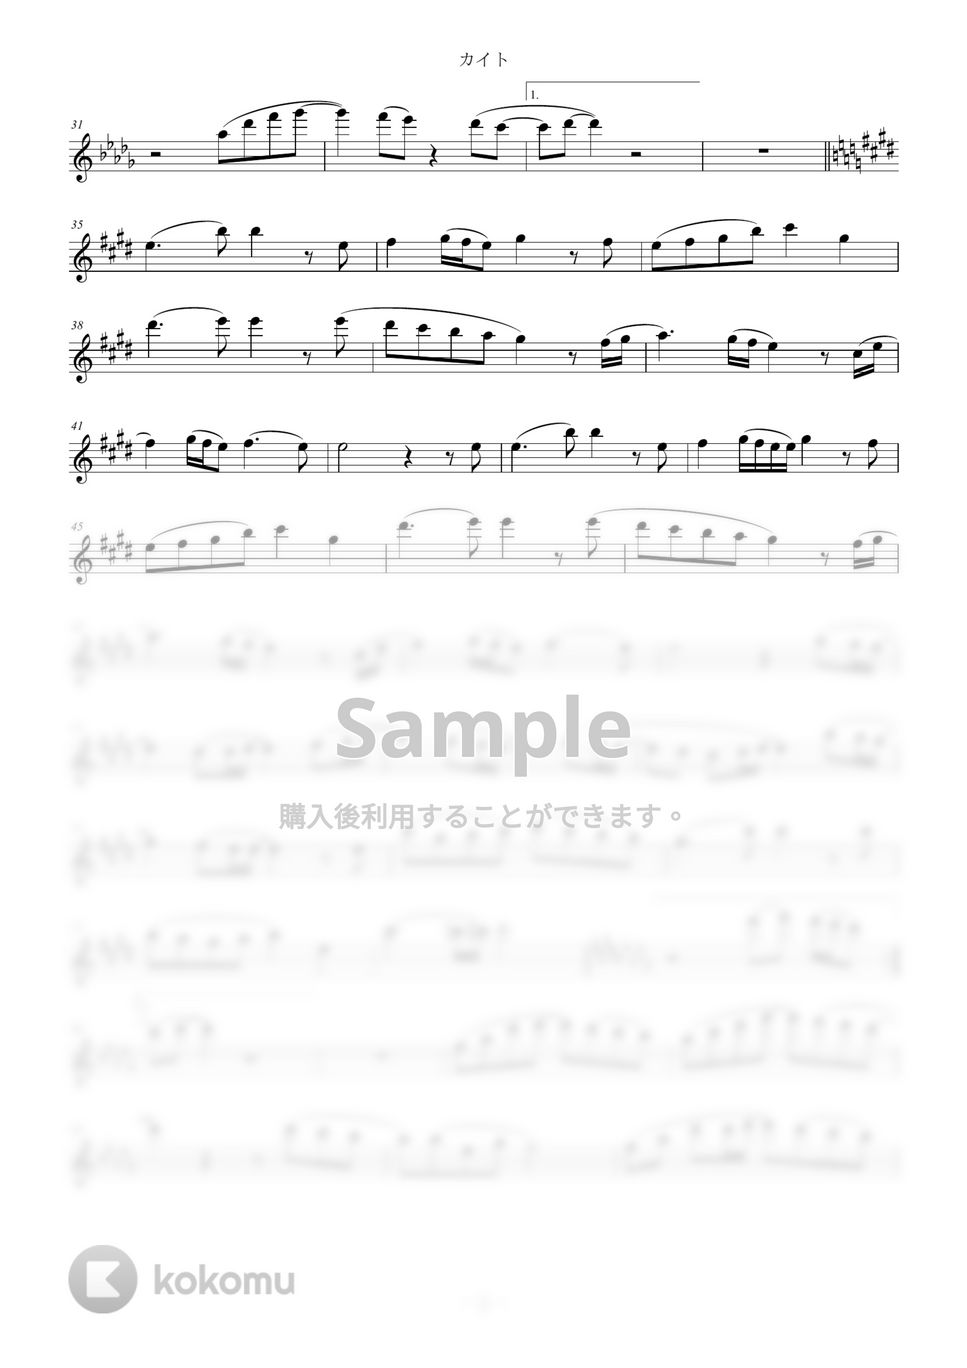 嵐 - カイト (in C) by y.shiori